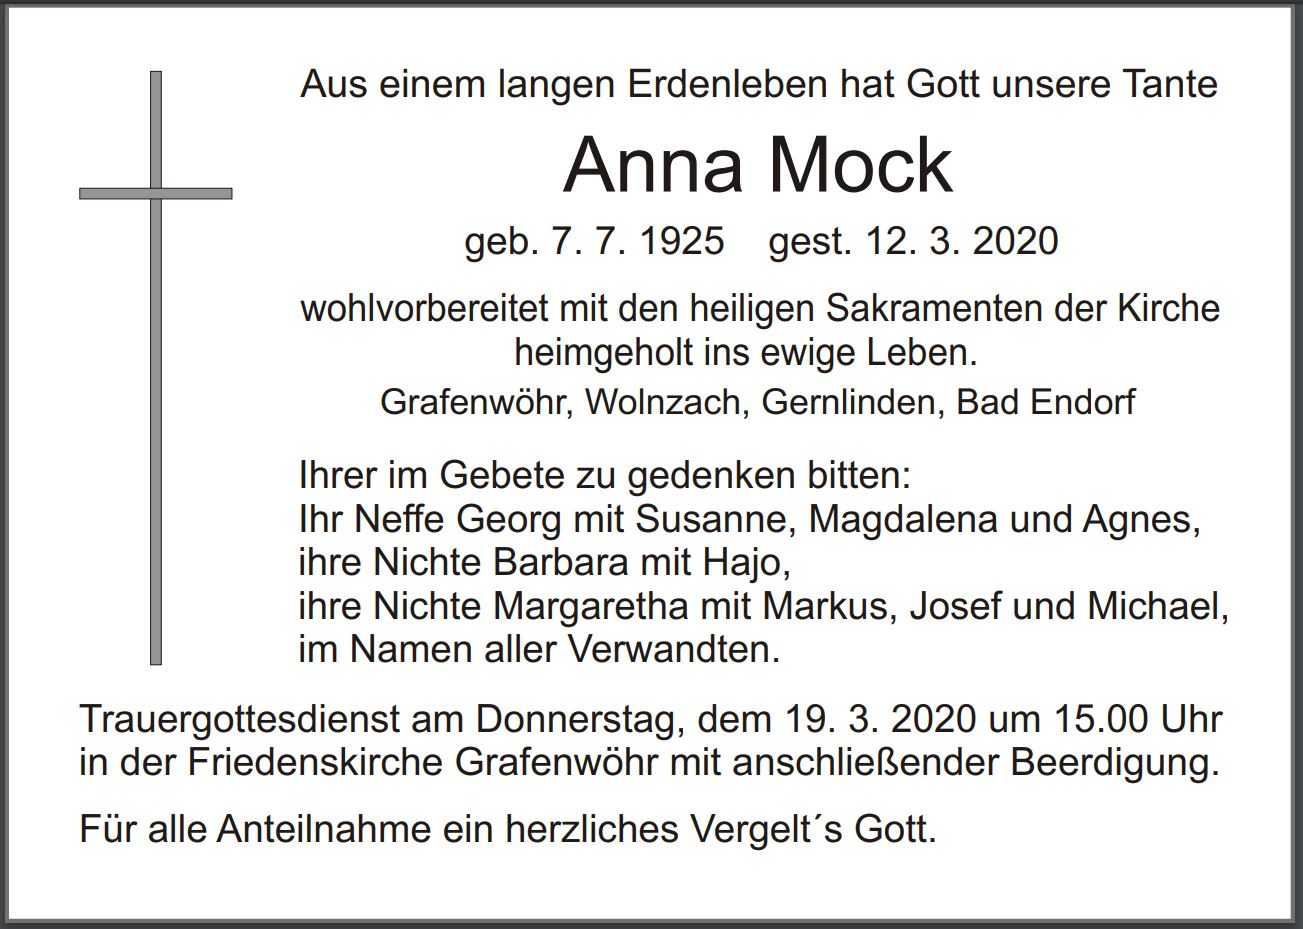 Traueranzeige Anna Mock, Grafenwöhr